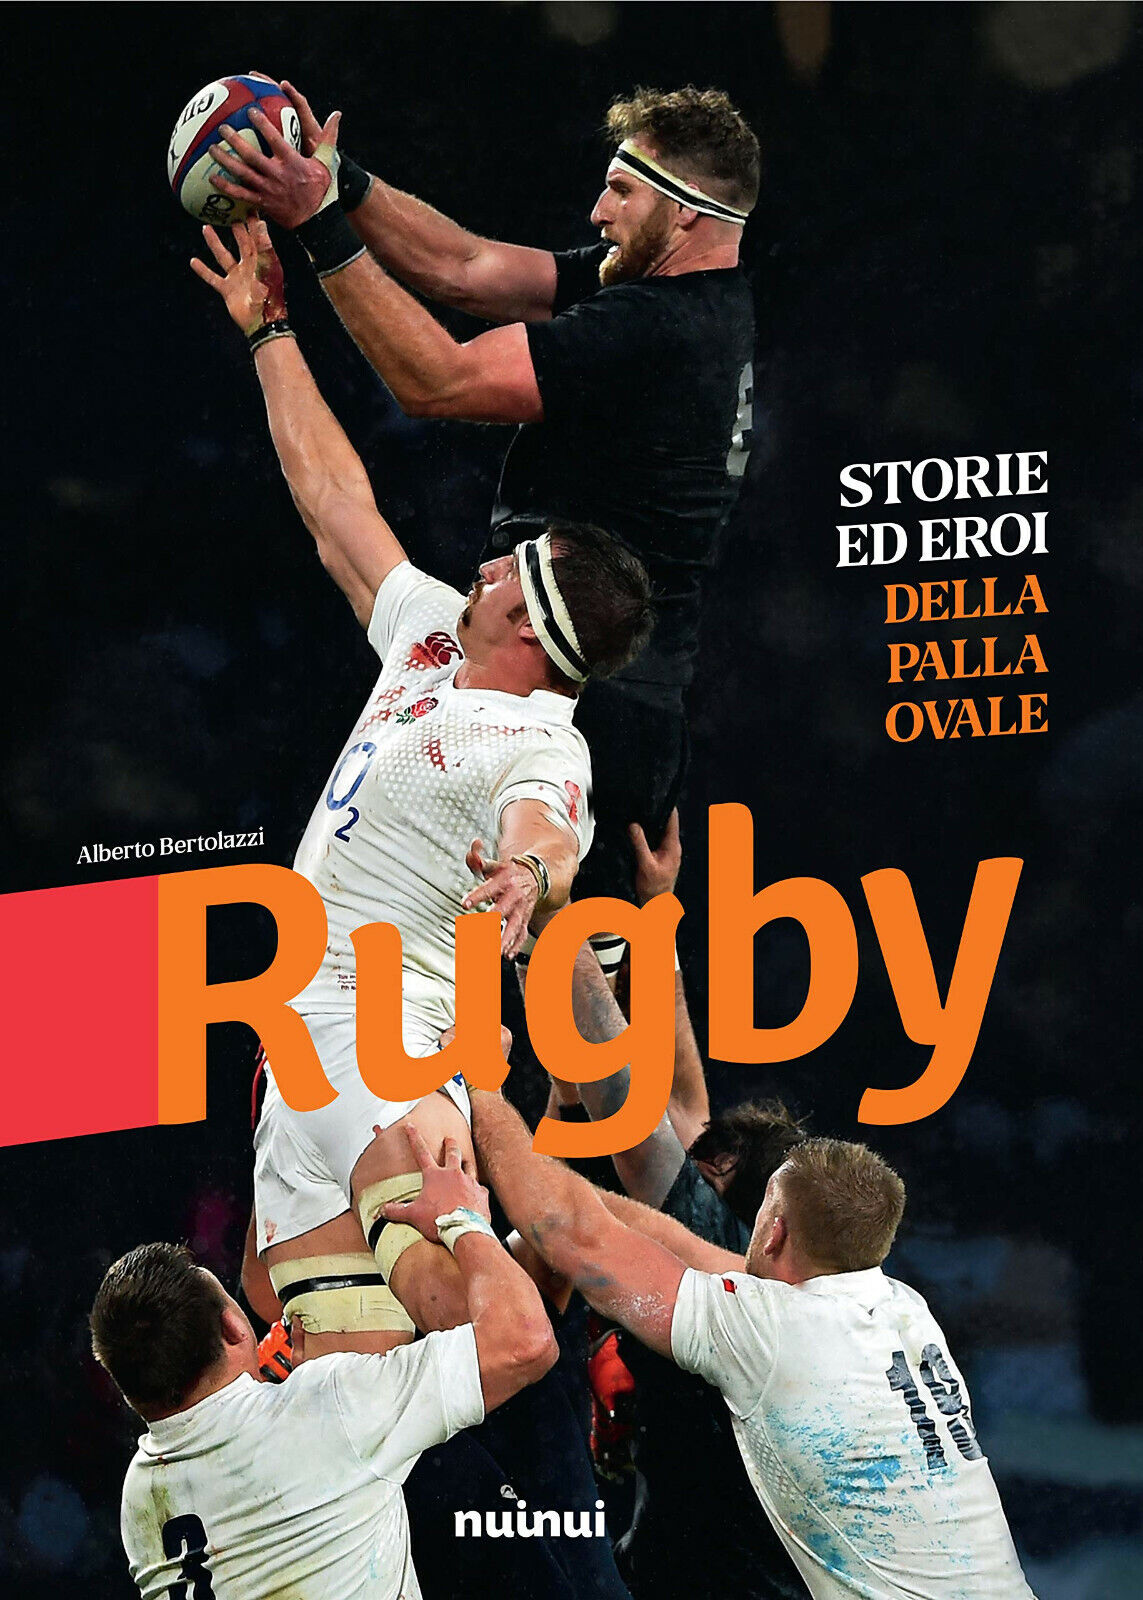 Rugby. Storie ed eroi della palla ovale - Alberto Bertolazzi - nuinui, 2019 libro usato